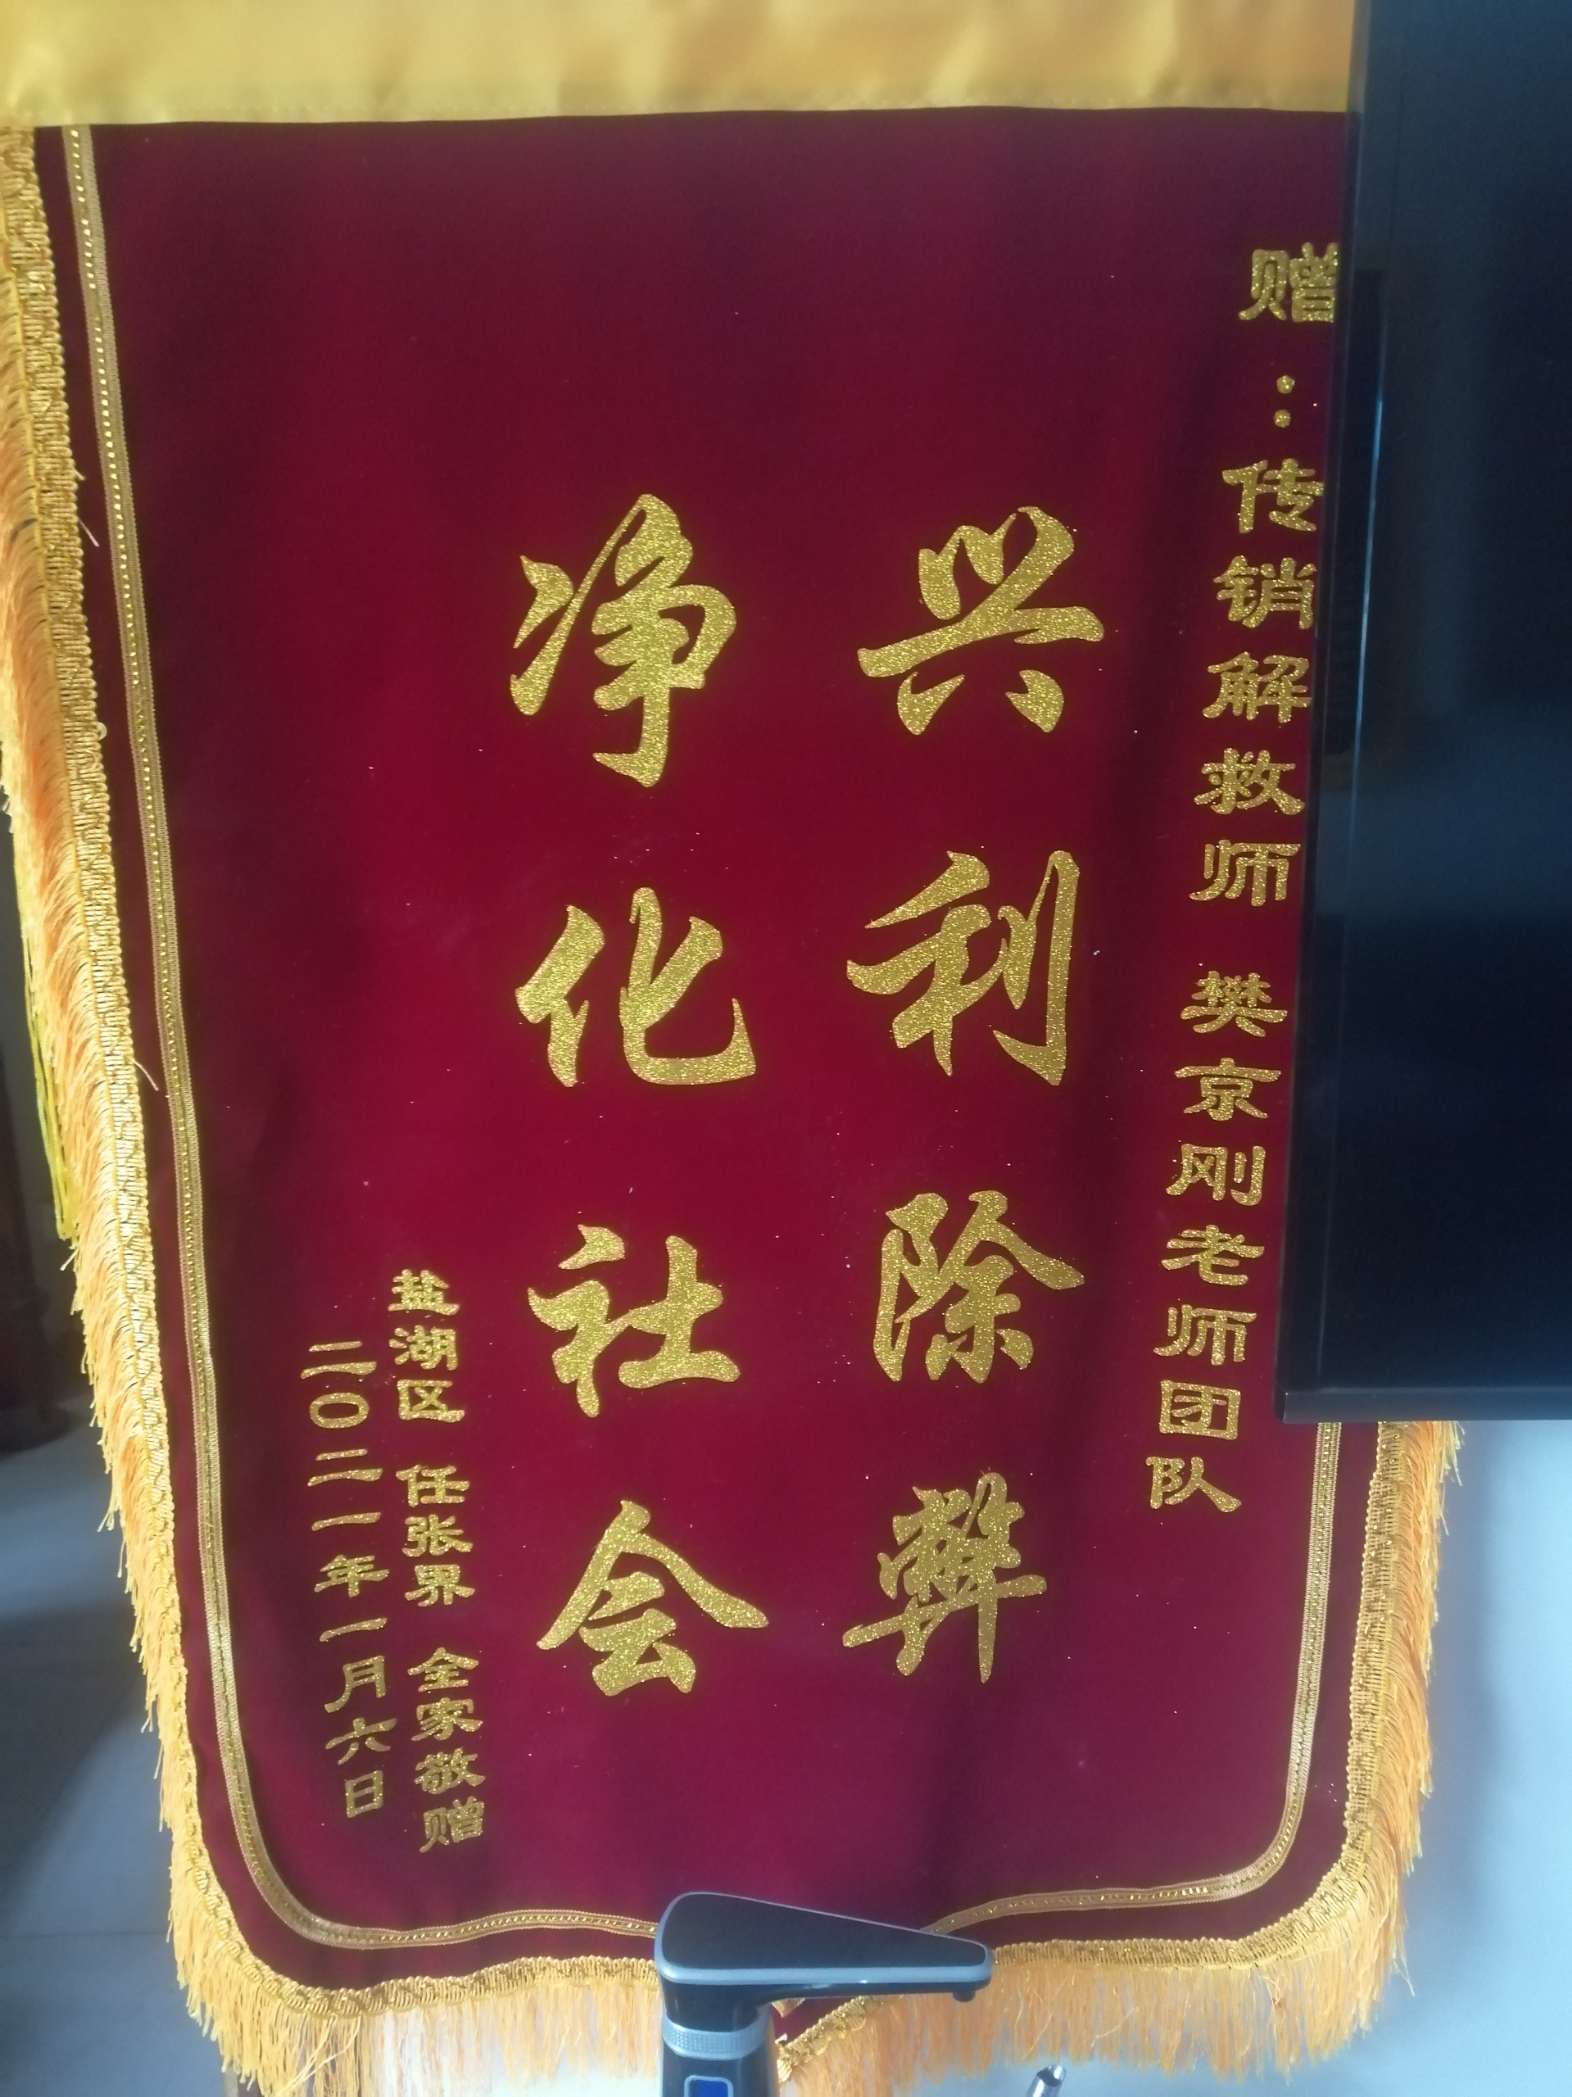 黑龙江荣誉证书